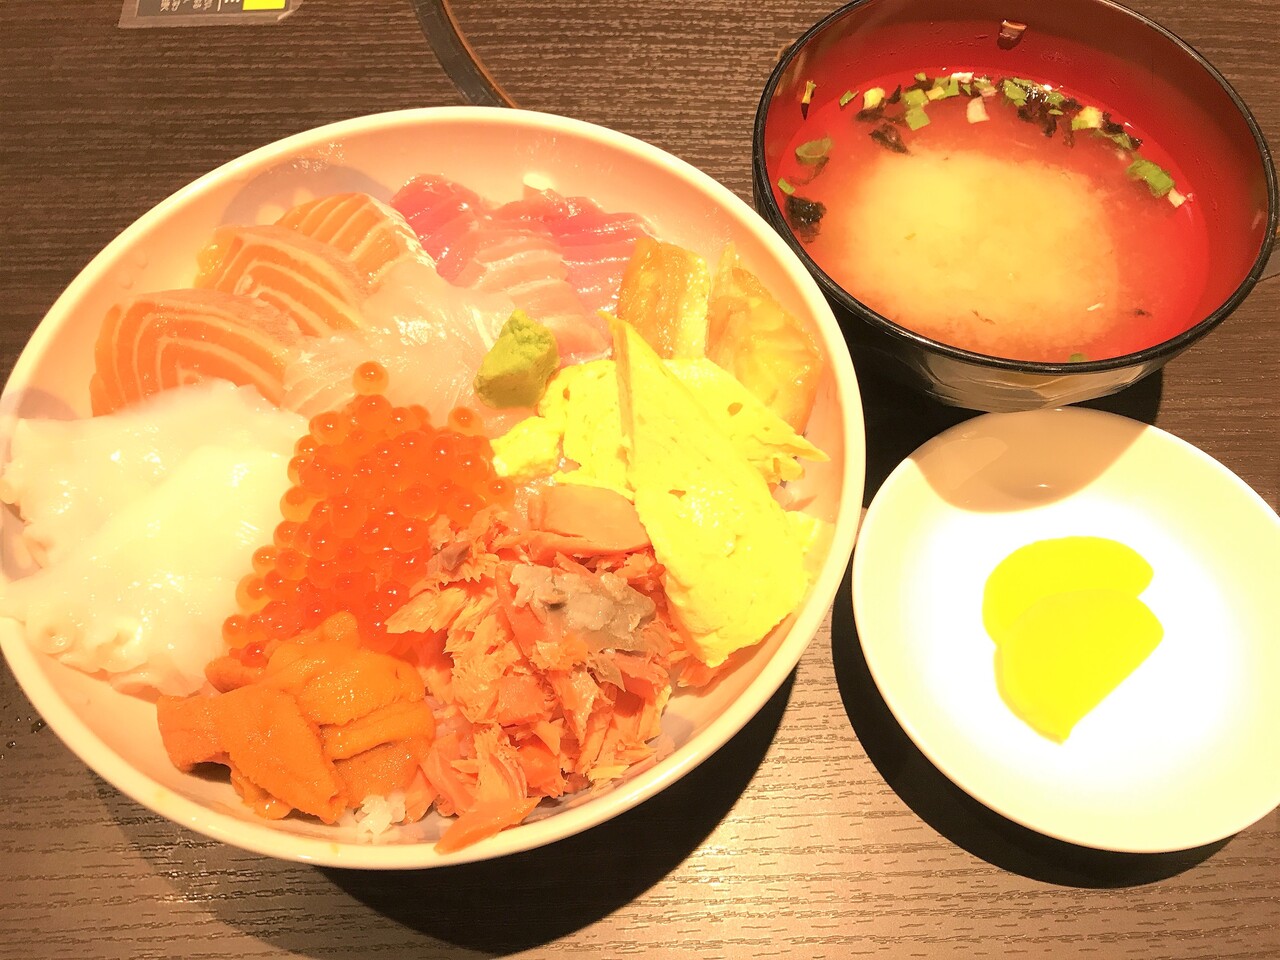 函館朝市の いか太郎でランチ 千円の海鮮丼を食べた はこある 函館のグルメ情報など